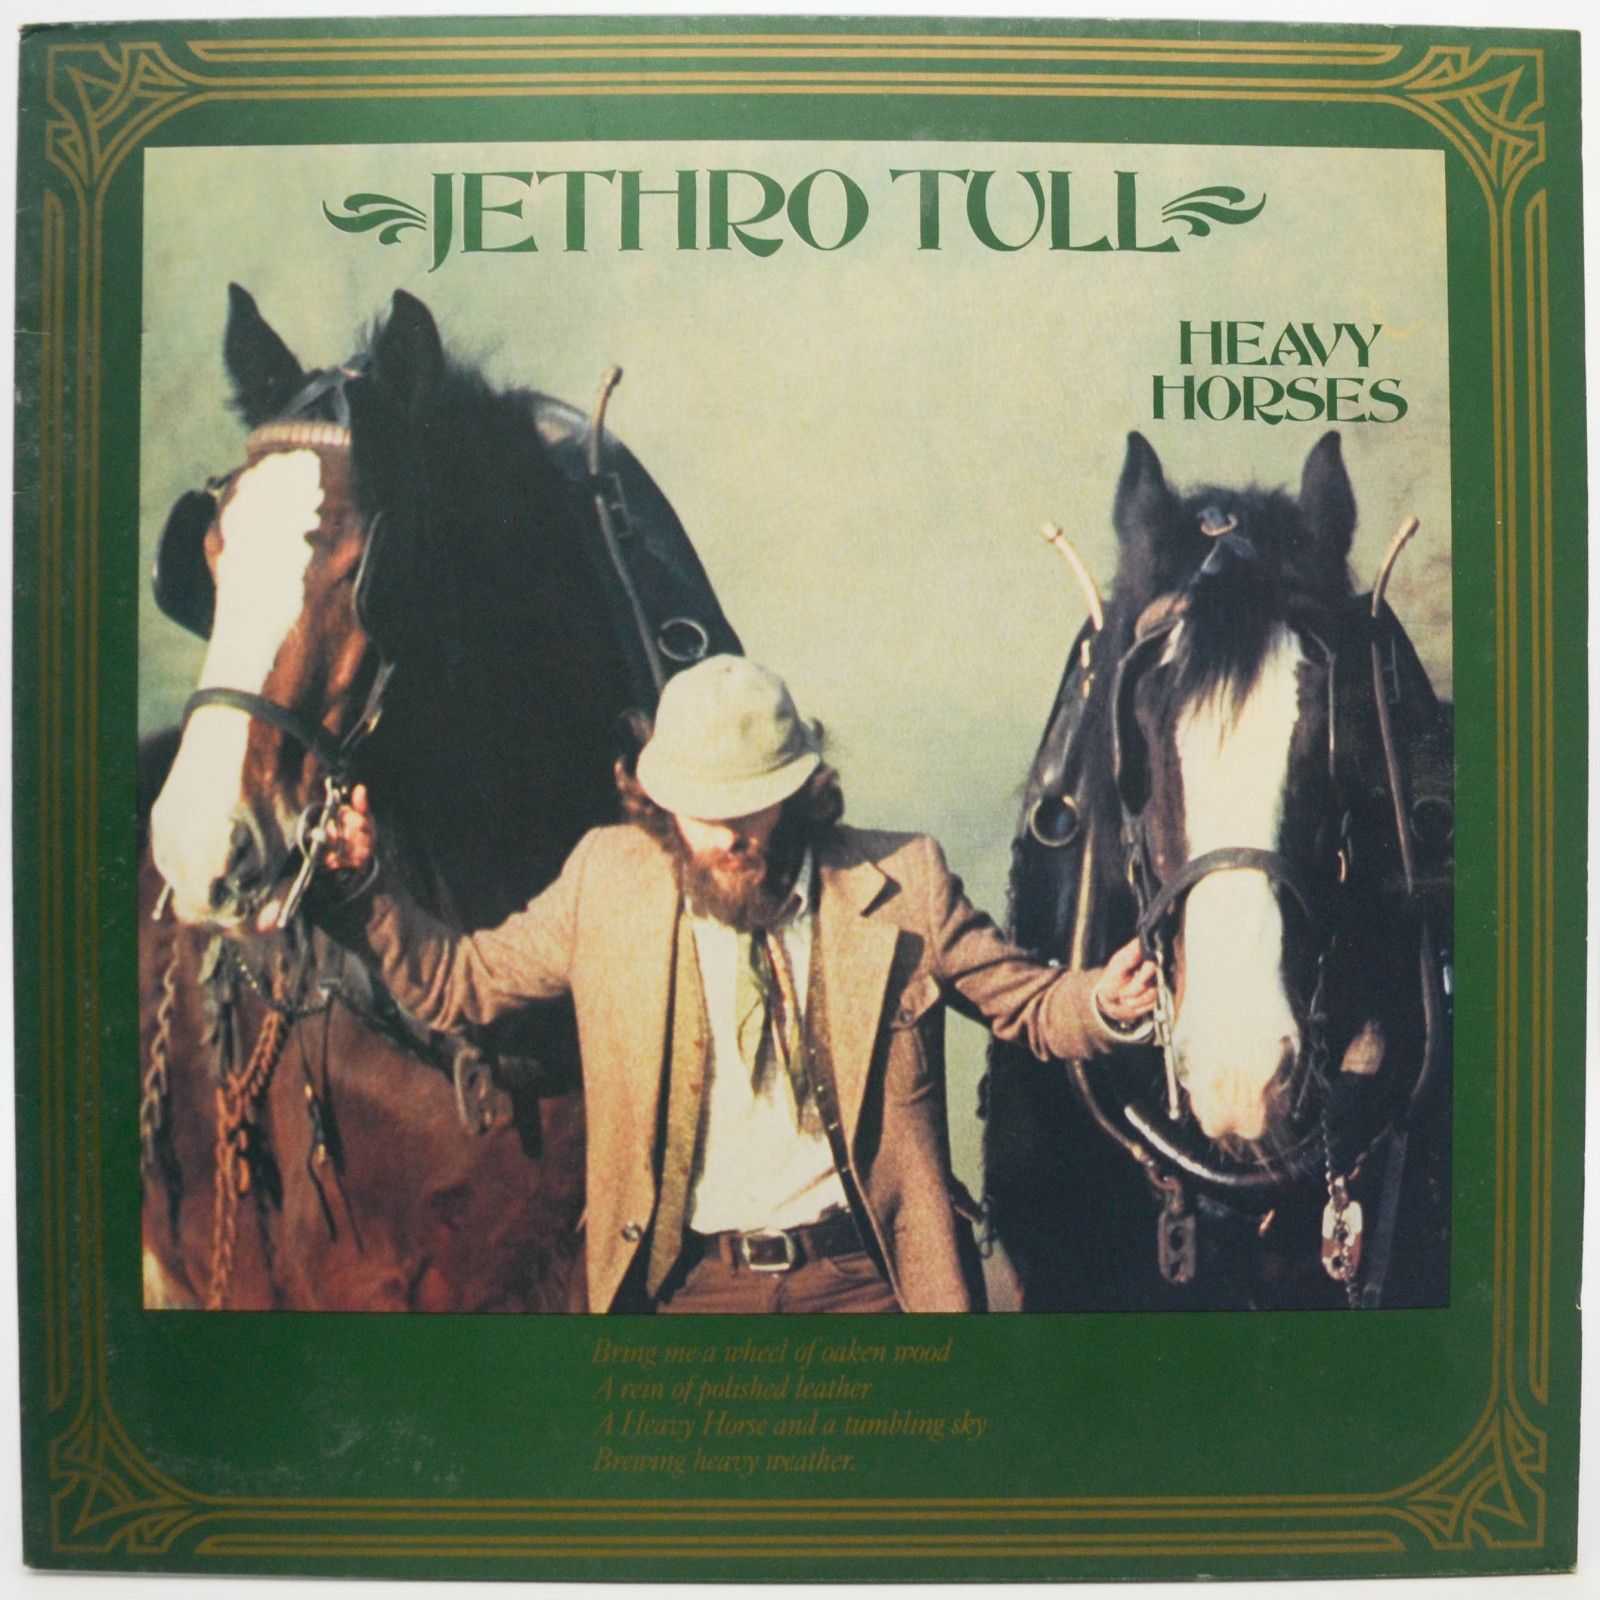 Jethro Tull — Heavy Horses, 1978